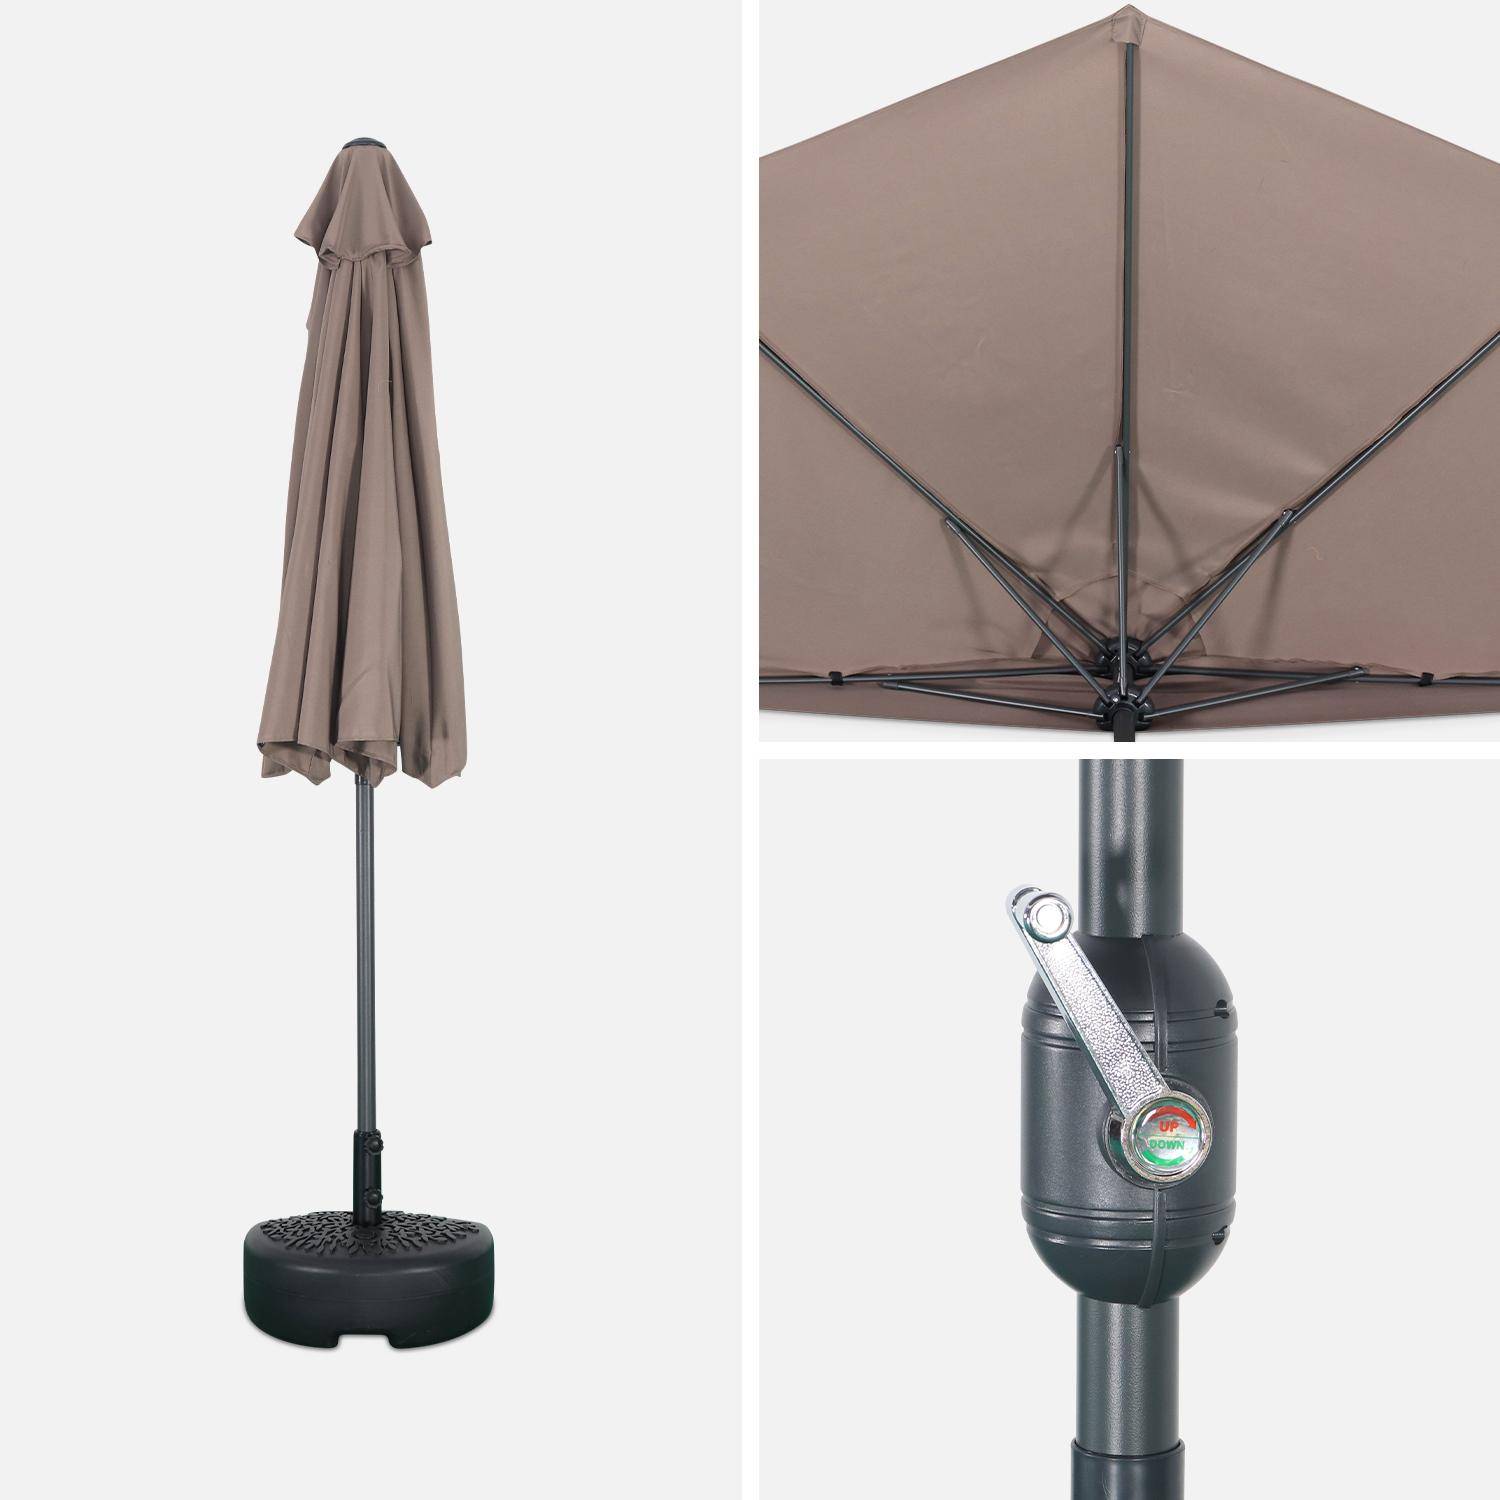  Parasol para balcón Ø250cm  – CALVI – Pequeño parasol recto, mástil en aluminio con manivela, tela color pardo ,sweeek,Photo5